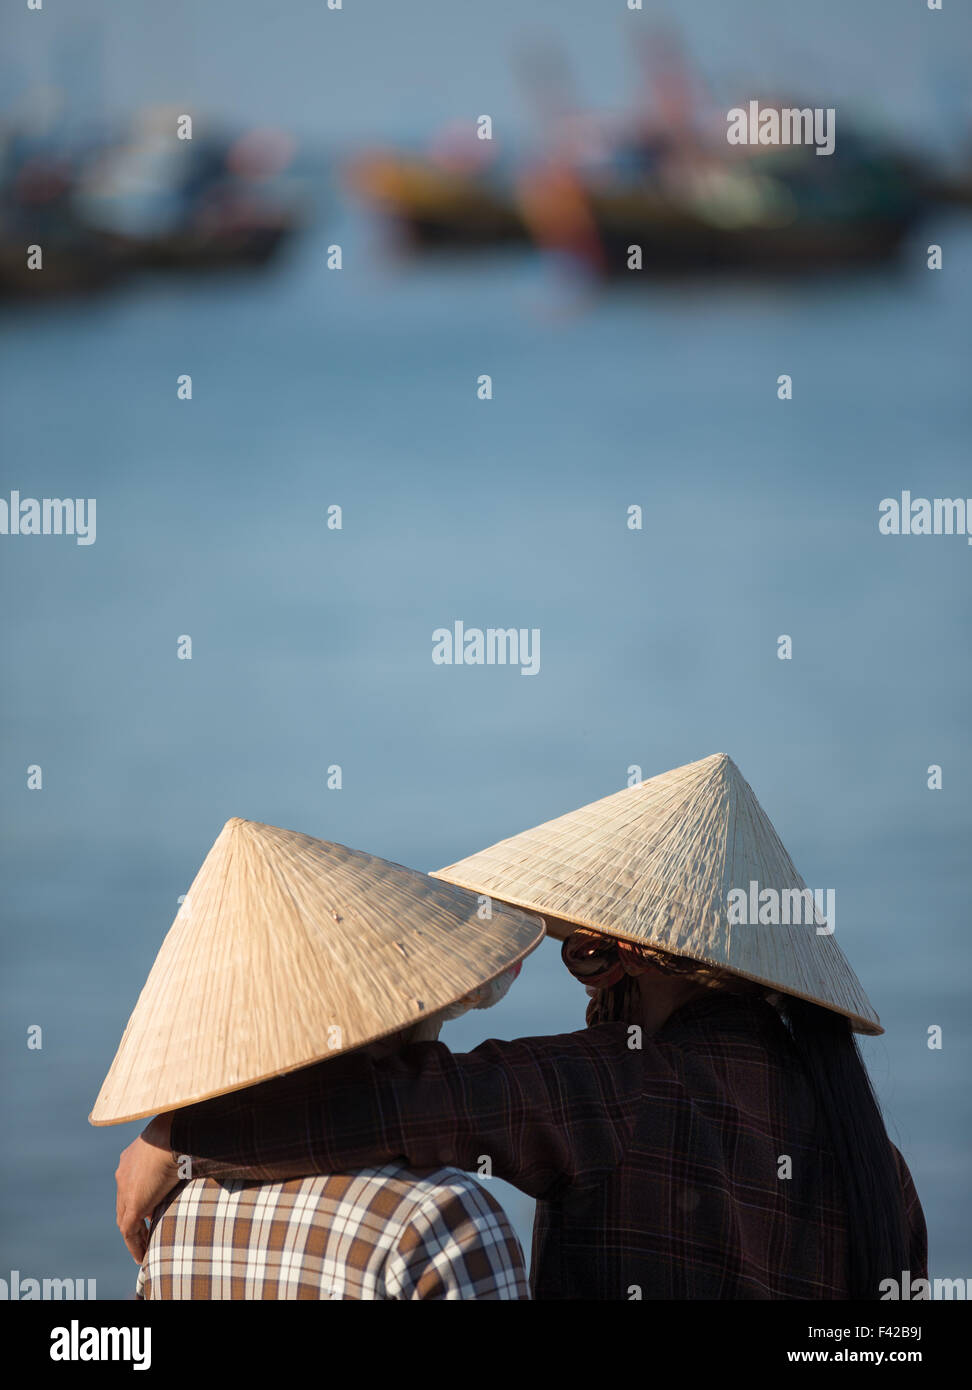 Mũi né villaggio di pescatori, Bình Thuận Provincia, Vietnam Foto Stock